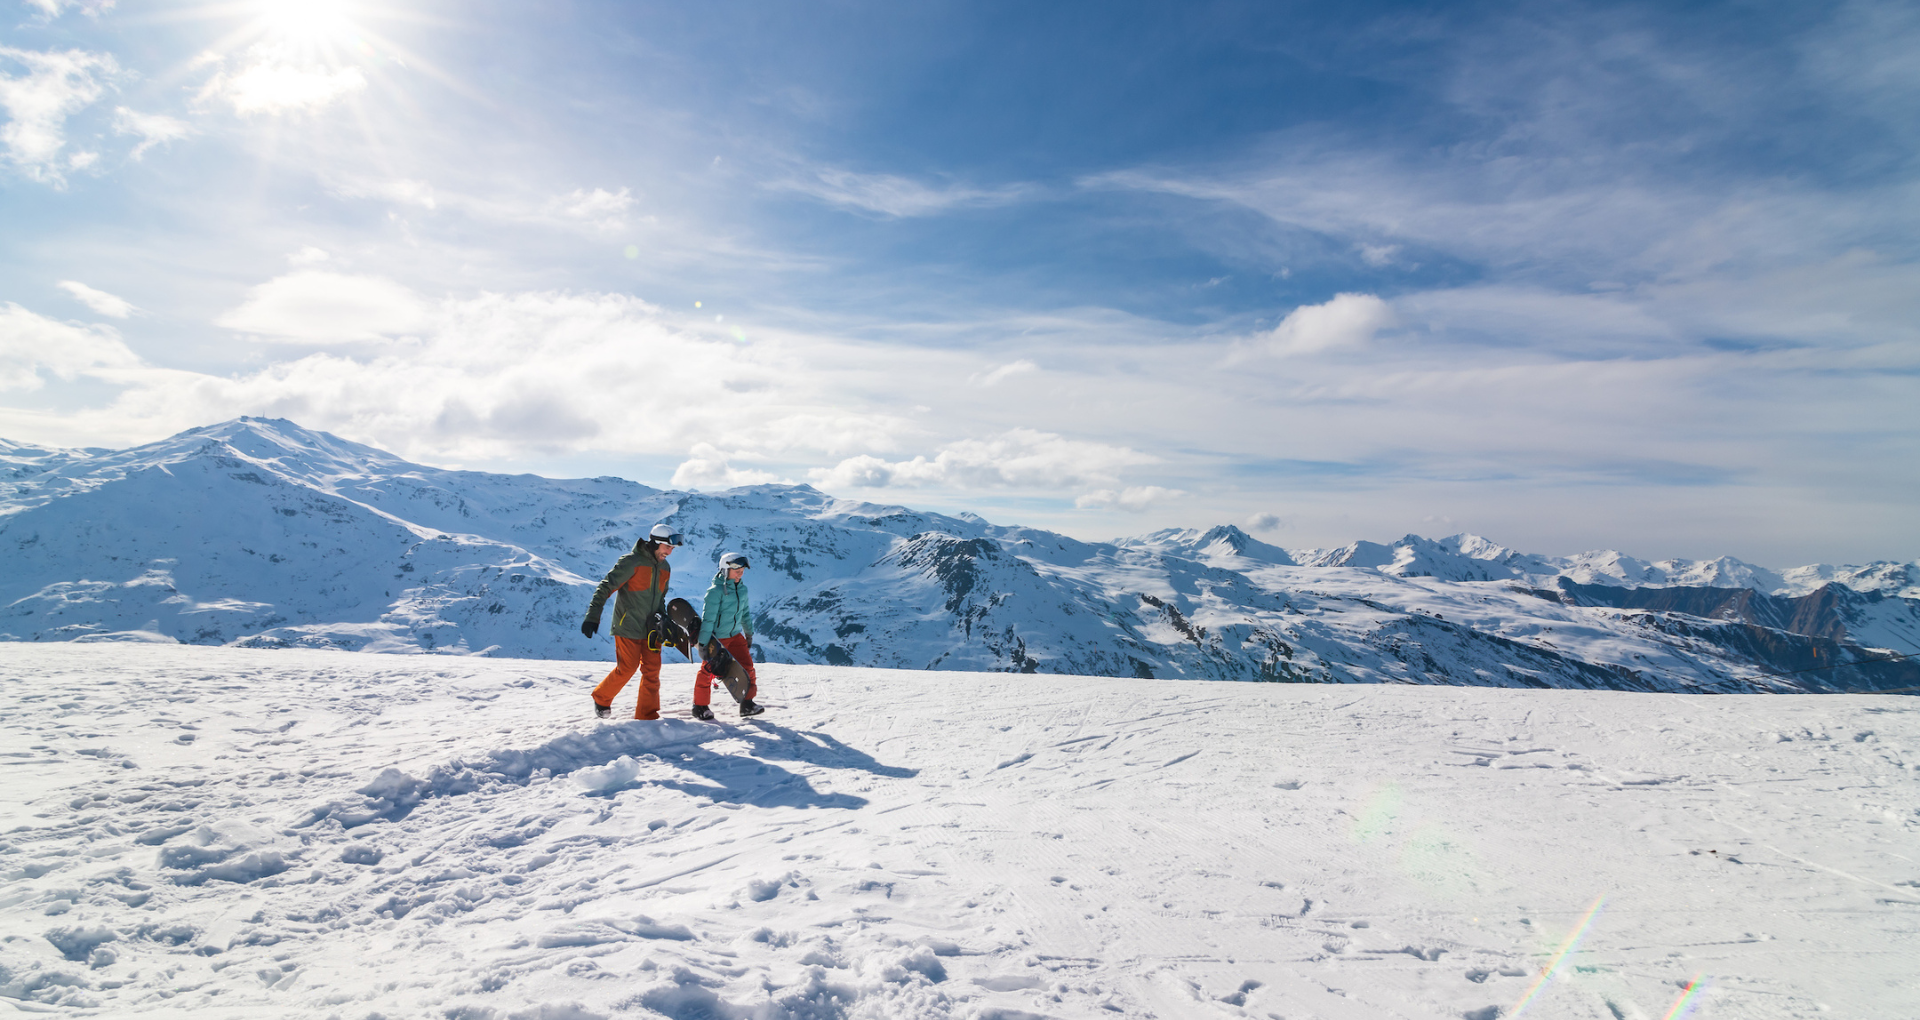 Deux skieurs marchant sur les pistes de ski avec les montagnes enneigées en arrière-plan